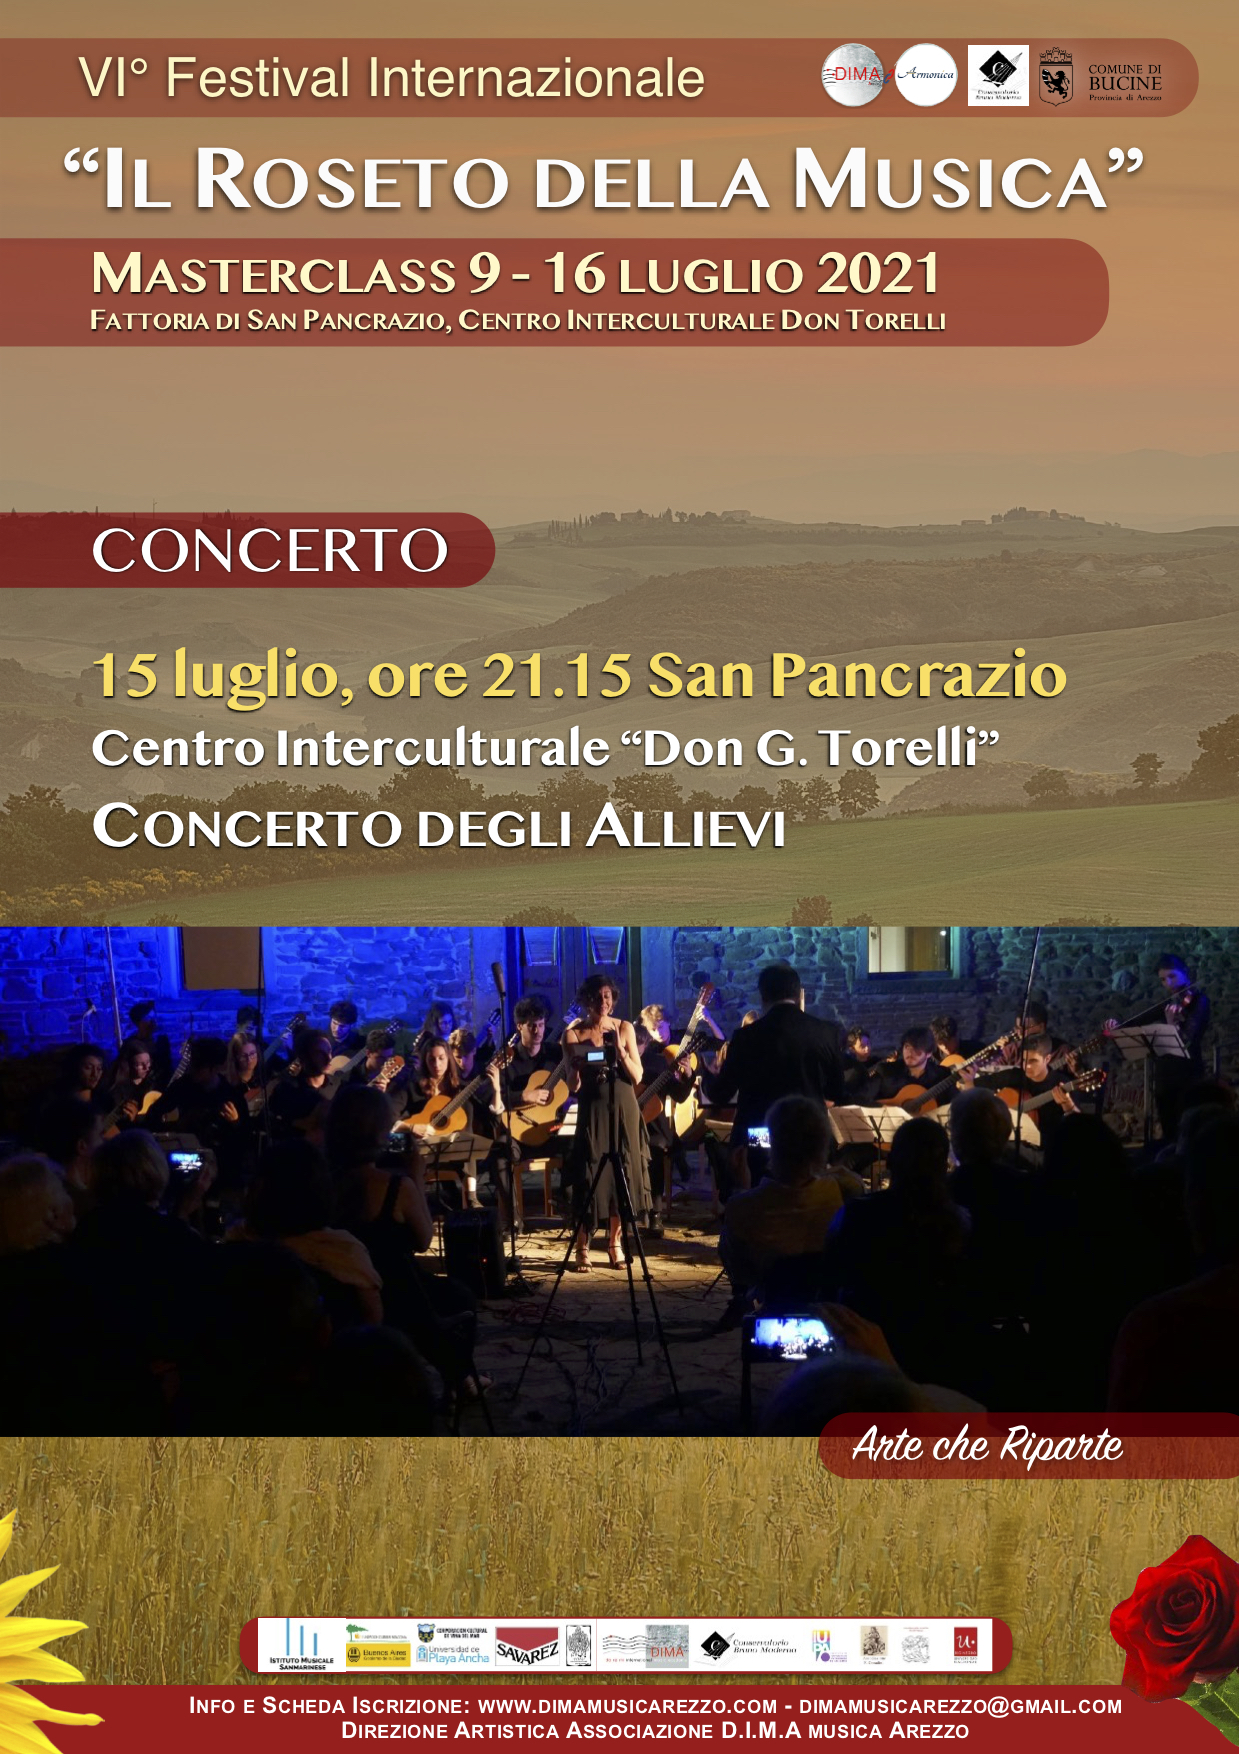 Concerto finale a San Pancrazio del VI° Festival Internazionale Il Roseto della Musica 2021